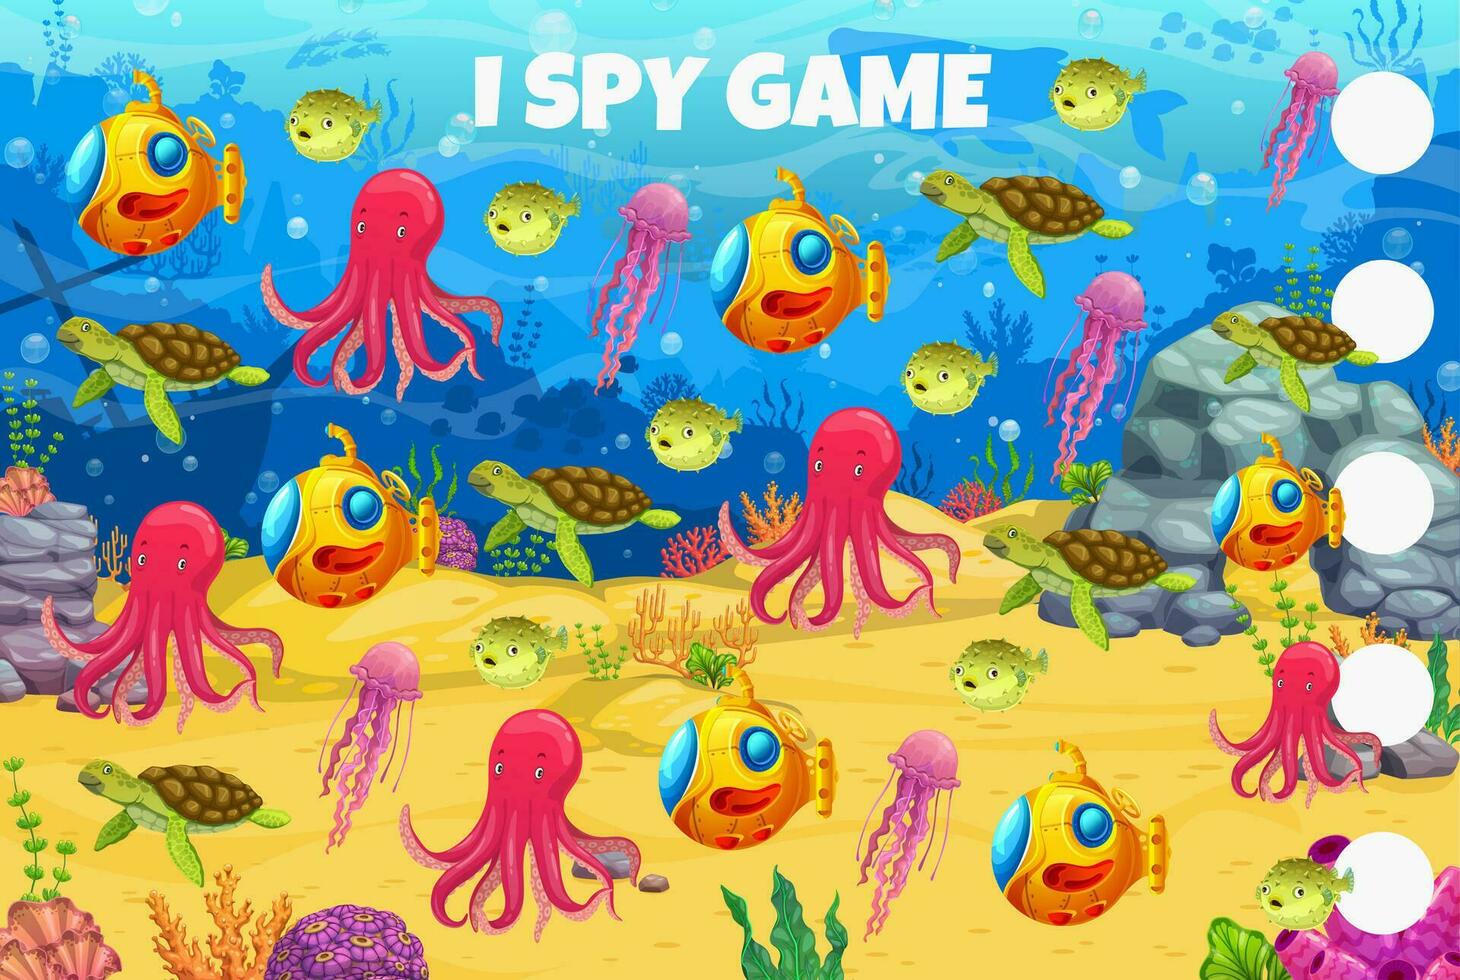 ich Spion Spiel mit Meer Tiere, unter Wasser Landschaft vektor